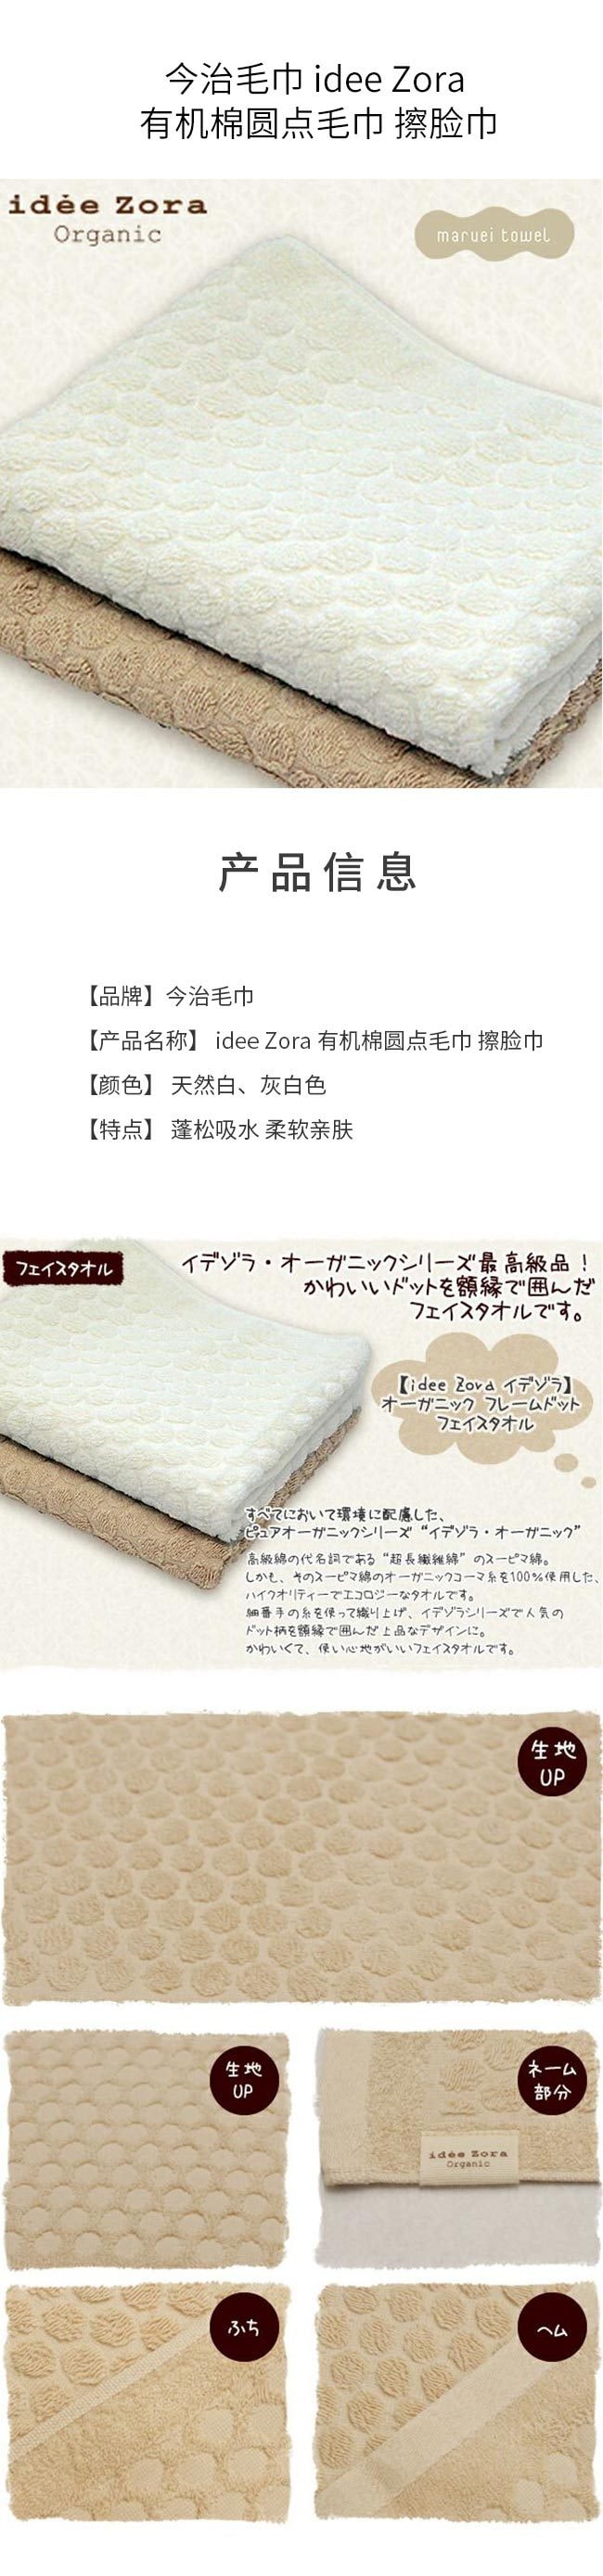 【日本直效郵件】今治毛巾 idee Zora 有機棉圓點毛巾 擦臉巾 灰白色